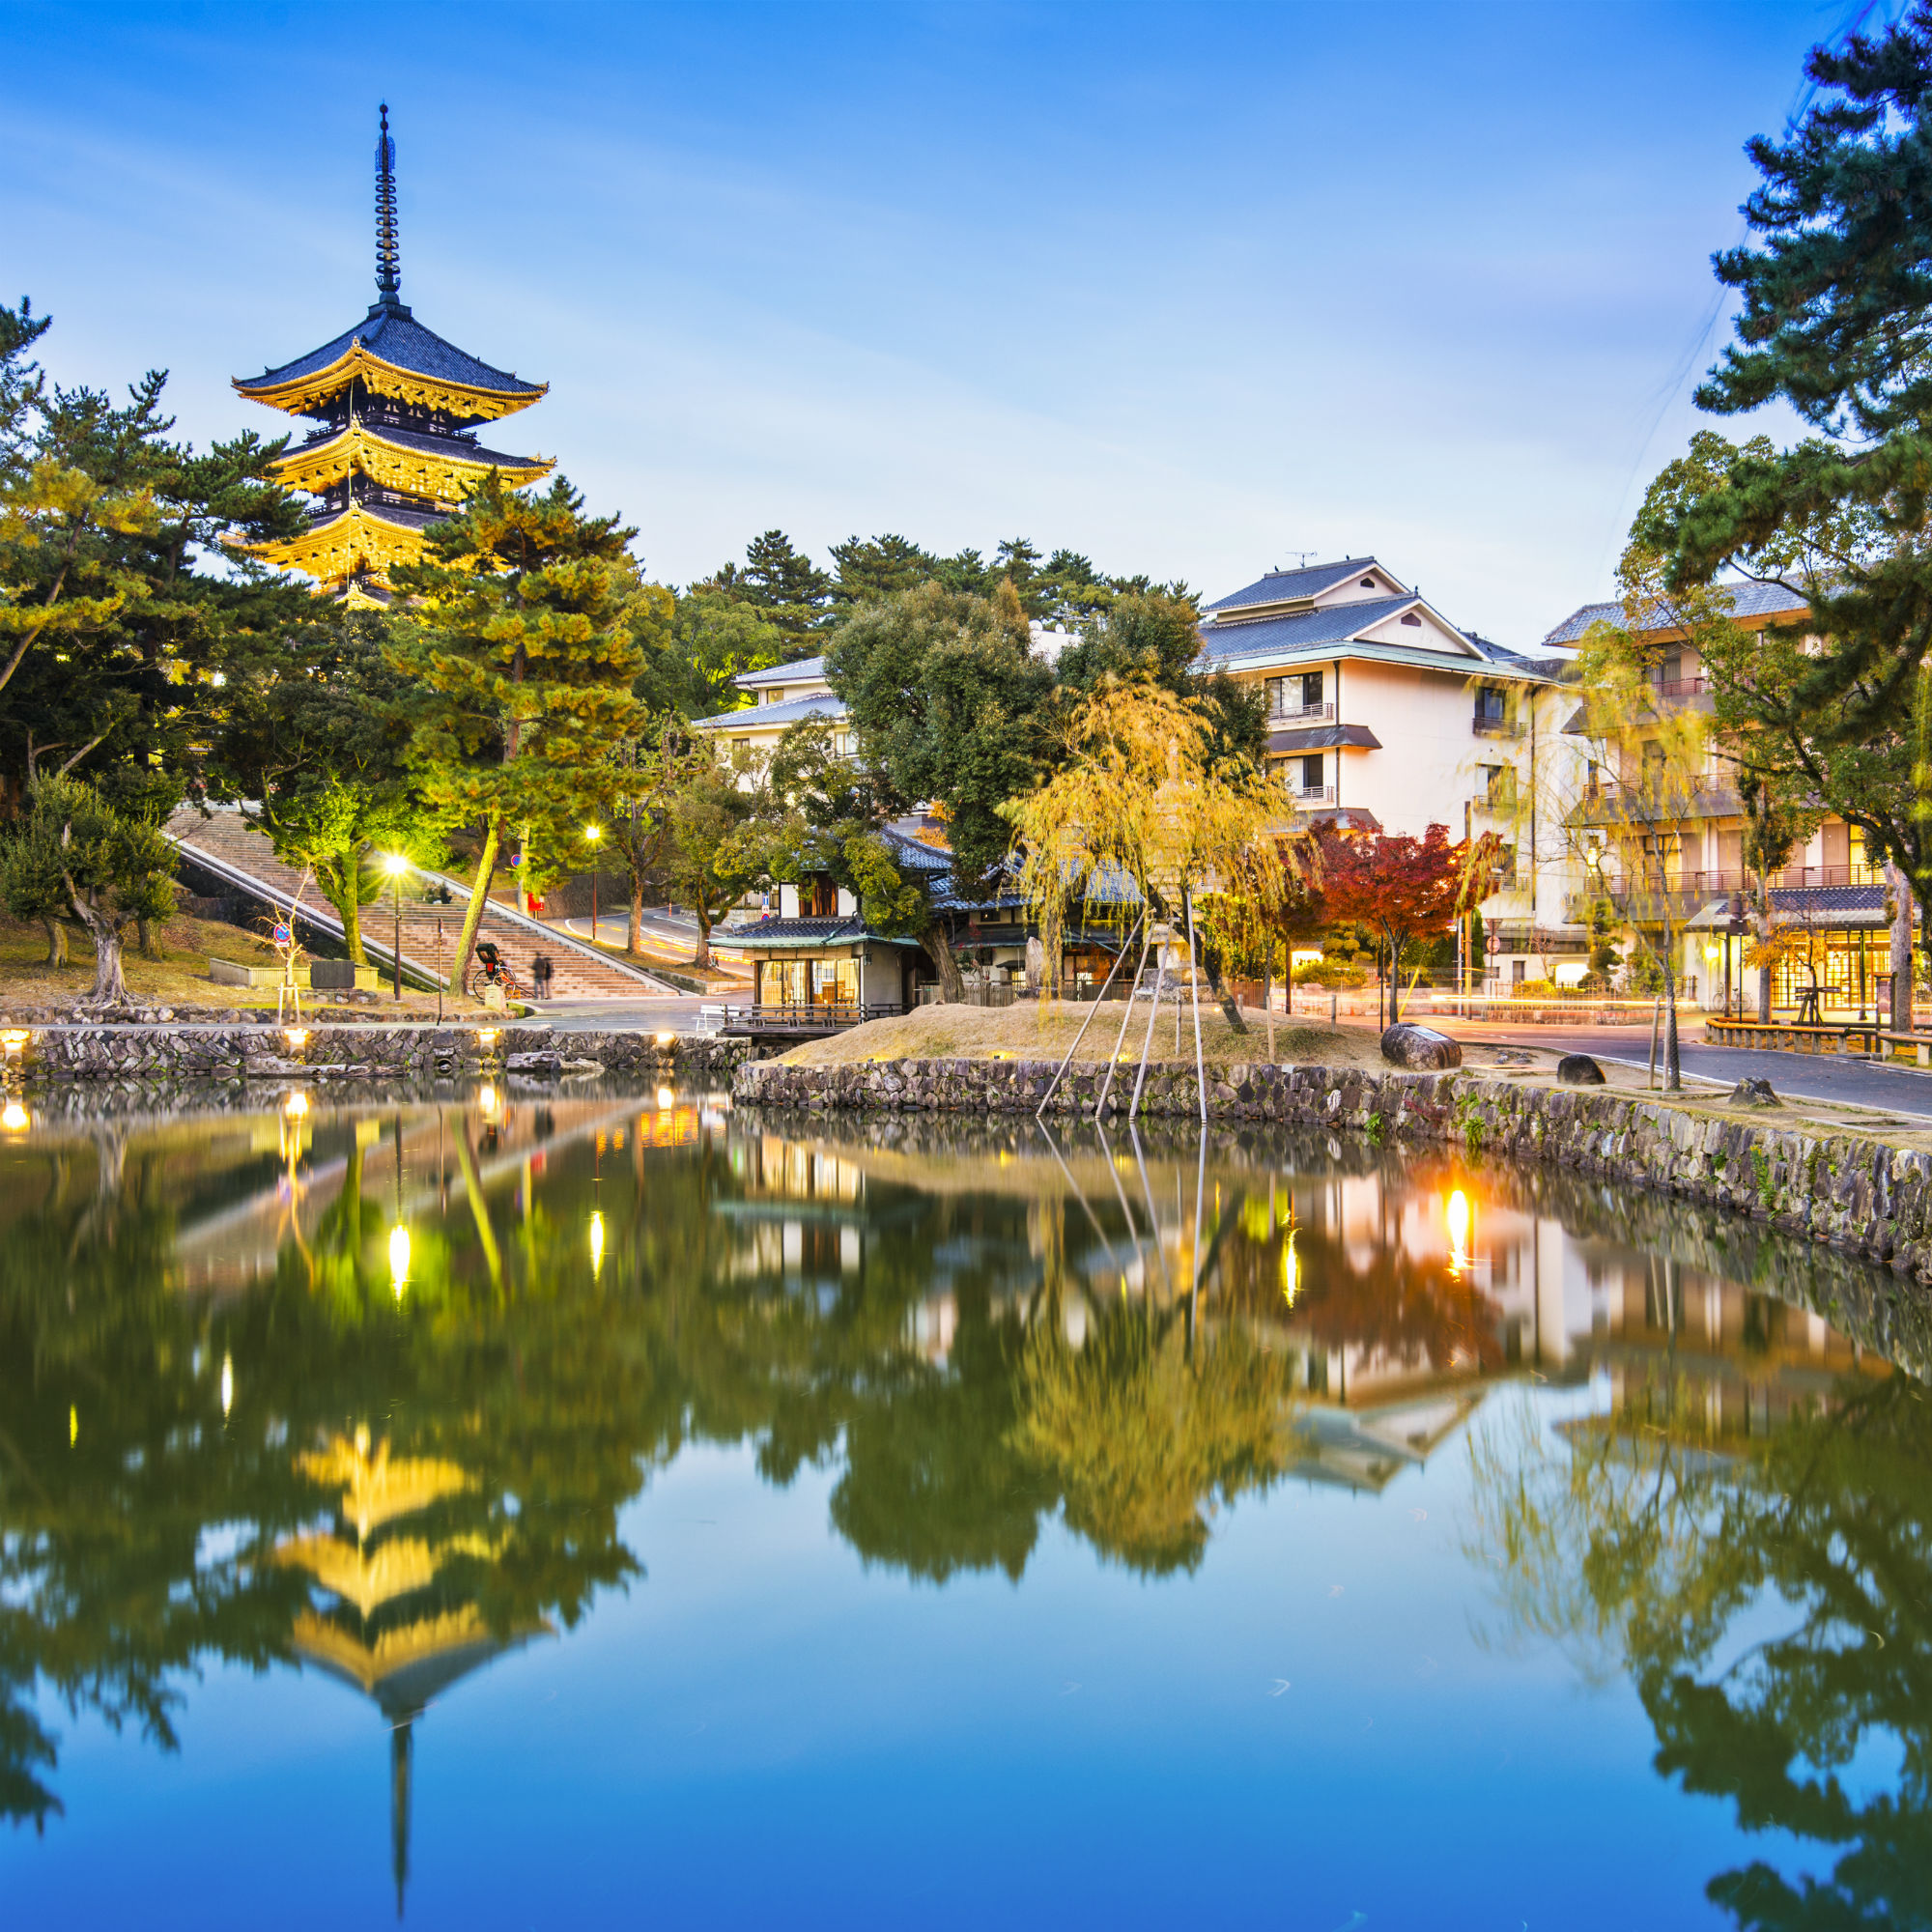 奈良公園内にある周囲360メートルの池。五重塔と柳が美しく水面に映される。